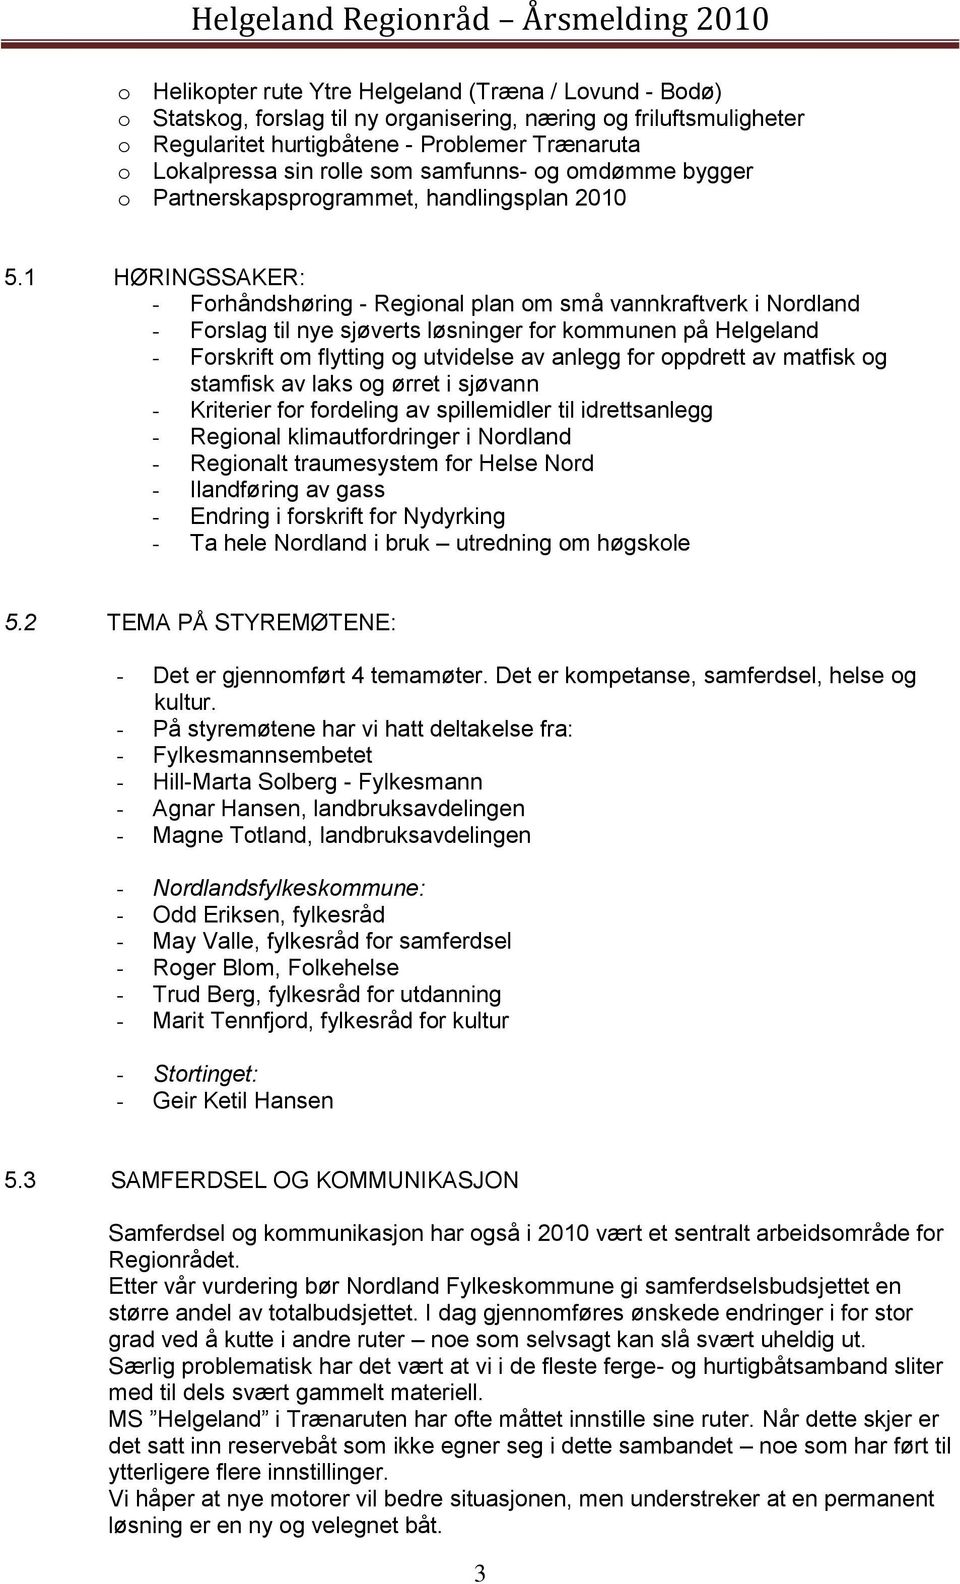 1 HØRINGSSAKER: - Forhåndshøring - Regional plan om små vannkraftverk i Nordland - Forslag til nye sjøverts løsninger for kommunen på Helgeland - Forskrift om flytting og utvidelse av anlegg for